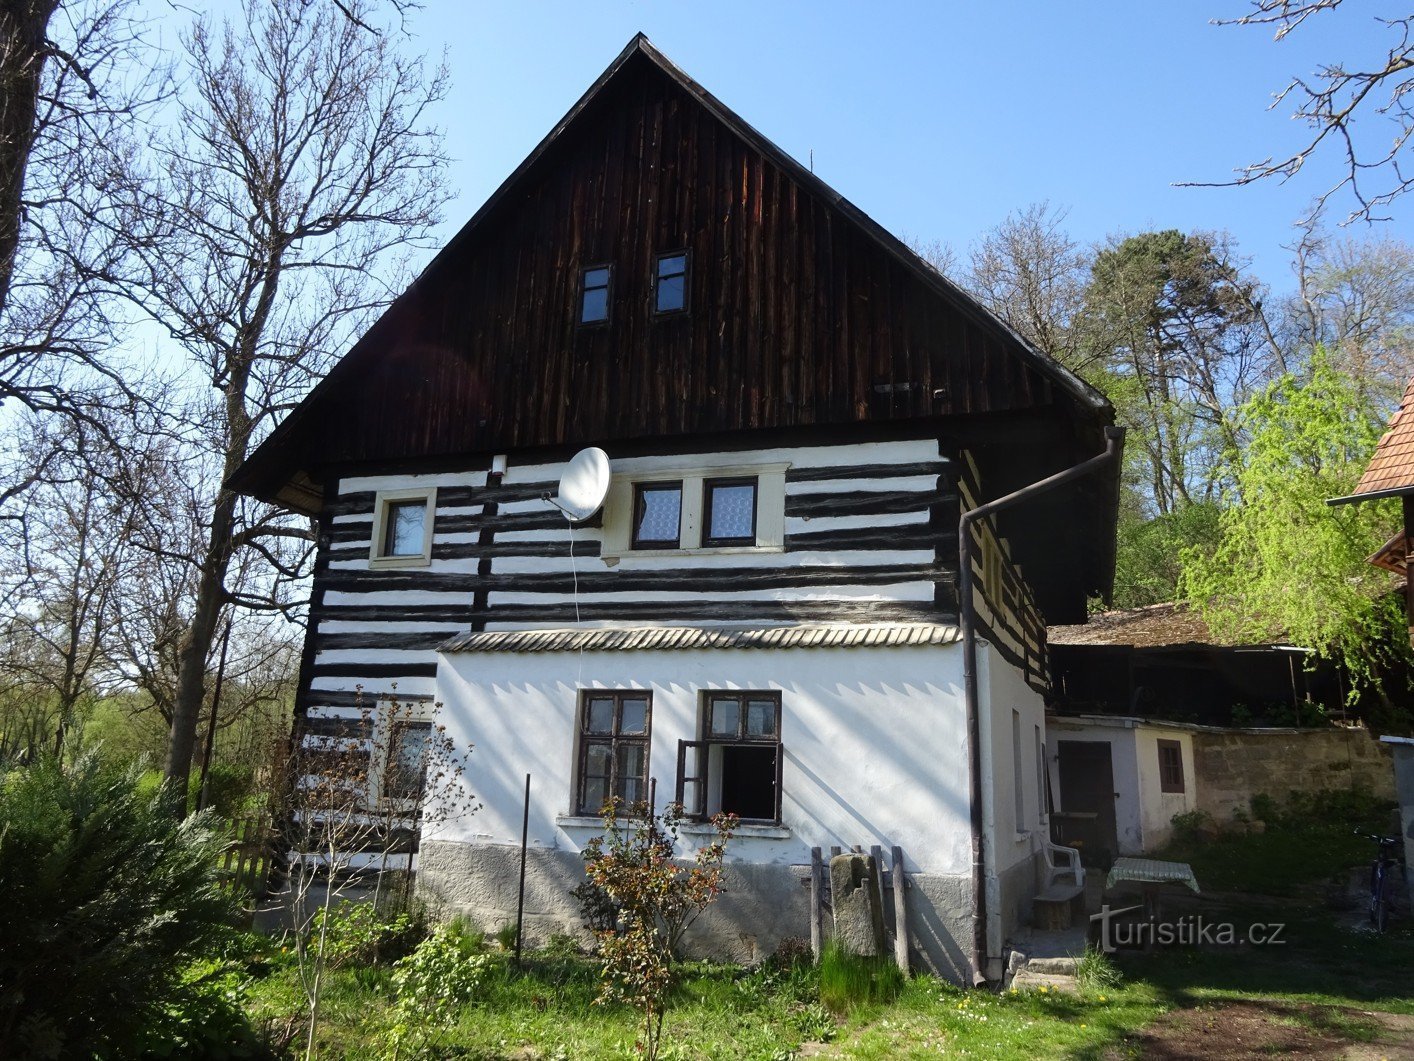 Dolní Bouzov 附近的 Střehom 村和童话般的磨坊